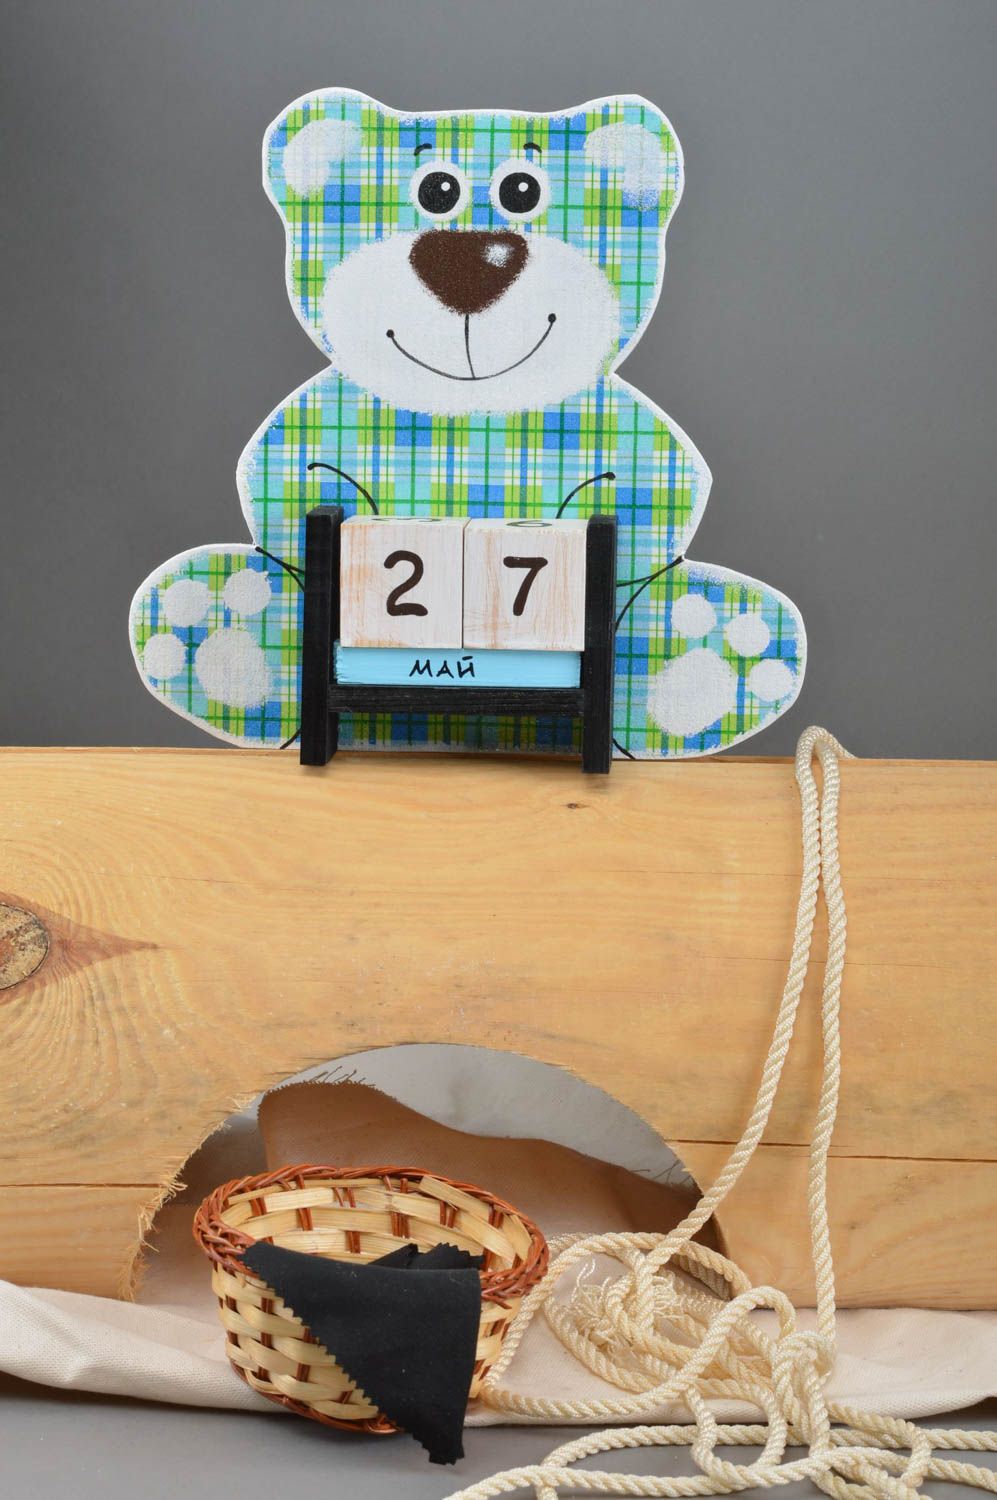 Календарь в виде мишки фанерный в клеточку небольшой красивый ручная работа фото 1